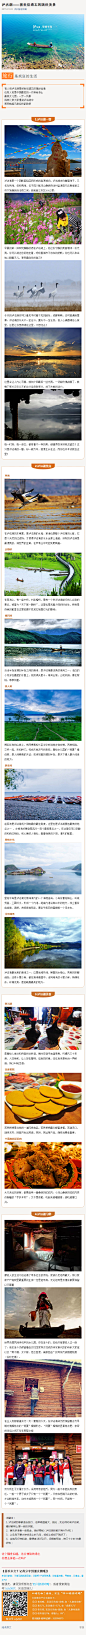 #泸沽湖# 有人说泸沽湖是被世俗遗忘的隔世仙境，也有人说是中国最后的一片神秘净土，最美女儿国，一步一风景，四妹儿带大家慢游泸沽湖中，感受她超凡脱俗的韵致吧！http://bbs.ysichuan.com/thread-2-1-1.html